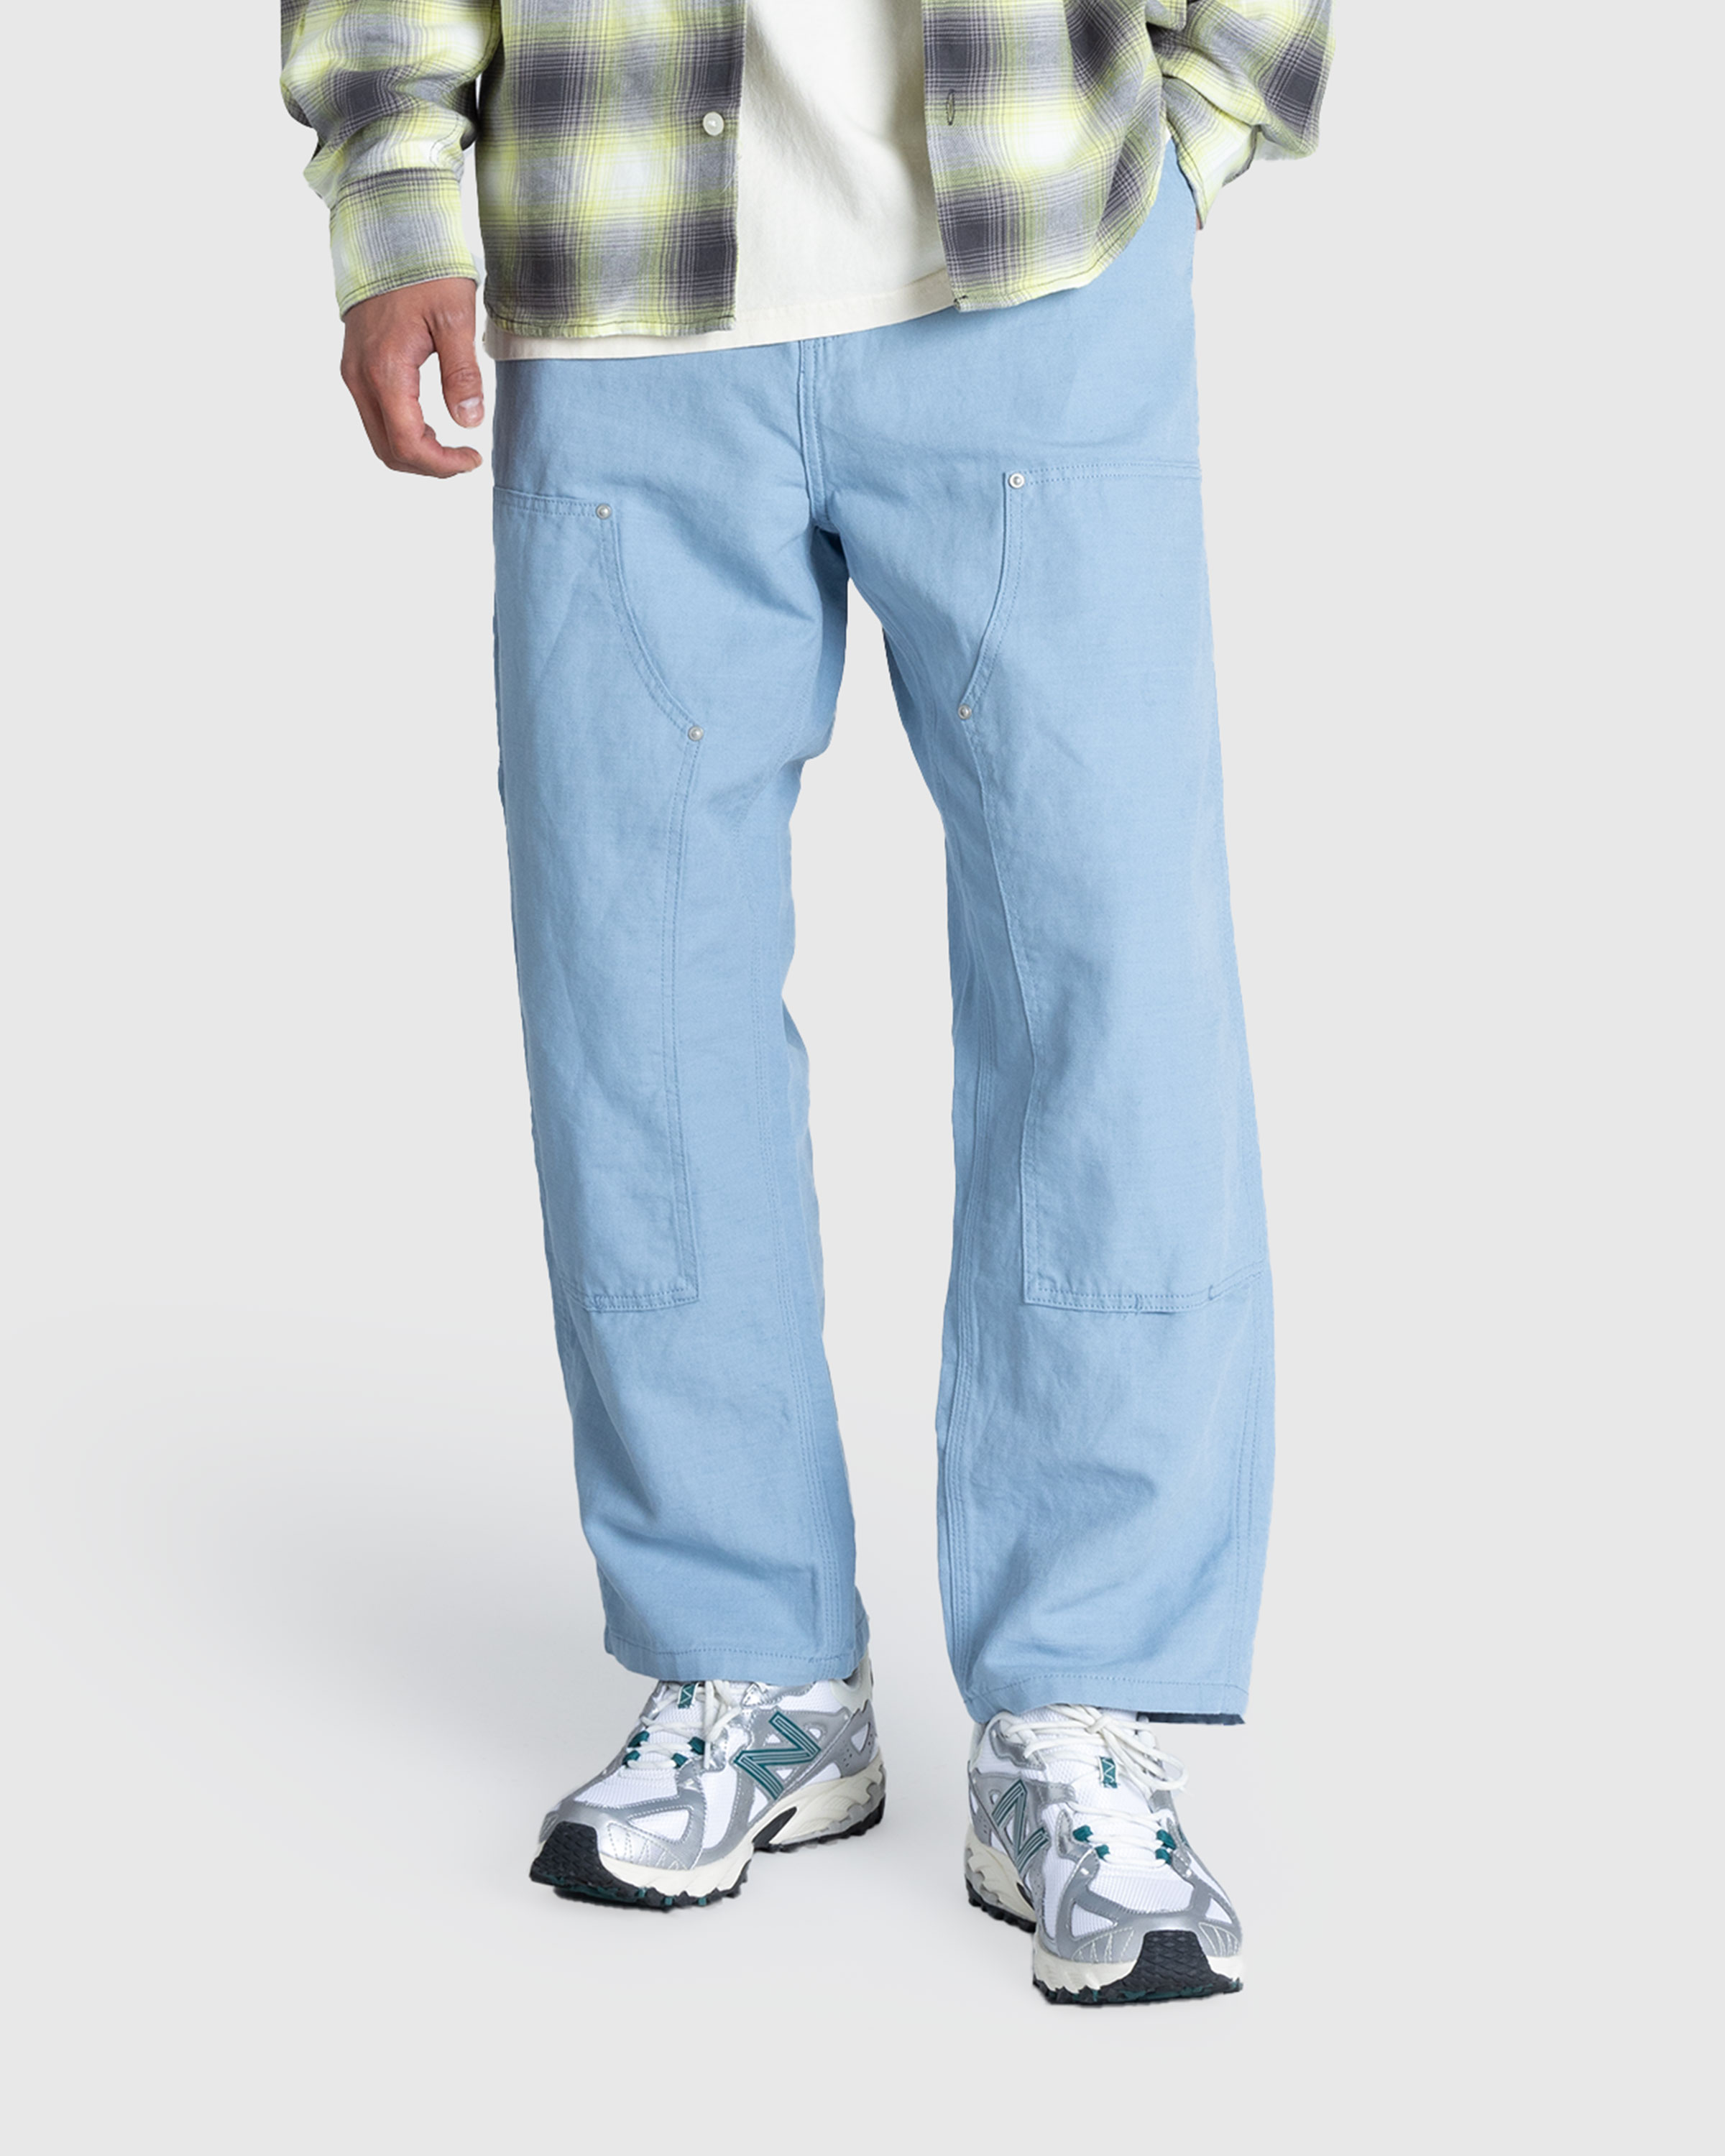 Carhartt WIP – Walter Double Knee Pant Misty Sky/Rinsed - Work Pants - Blue - Image 2